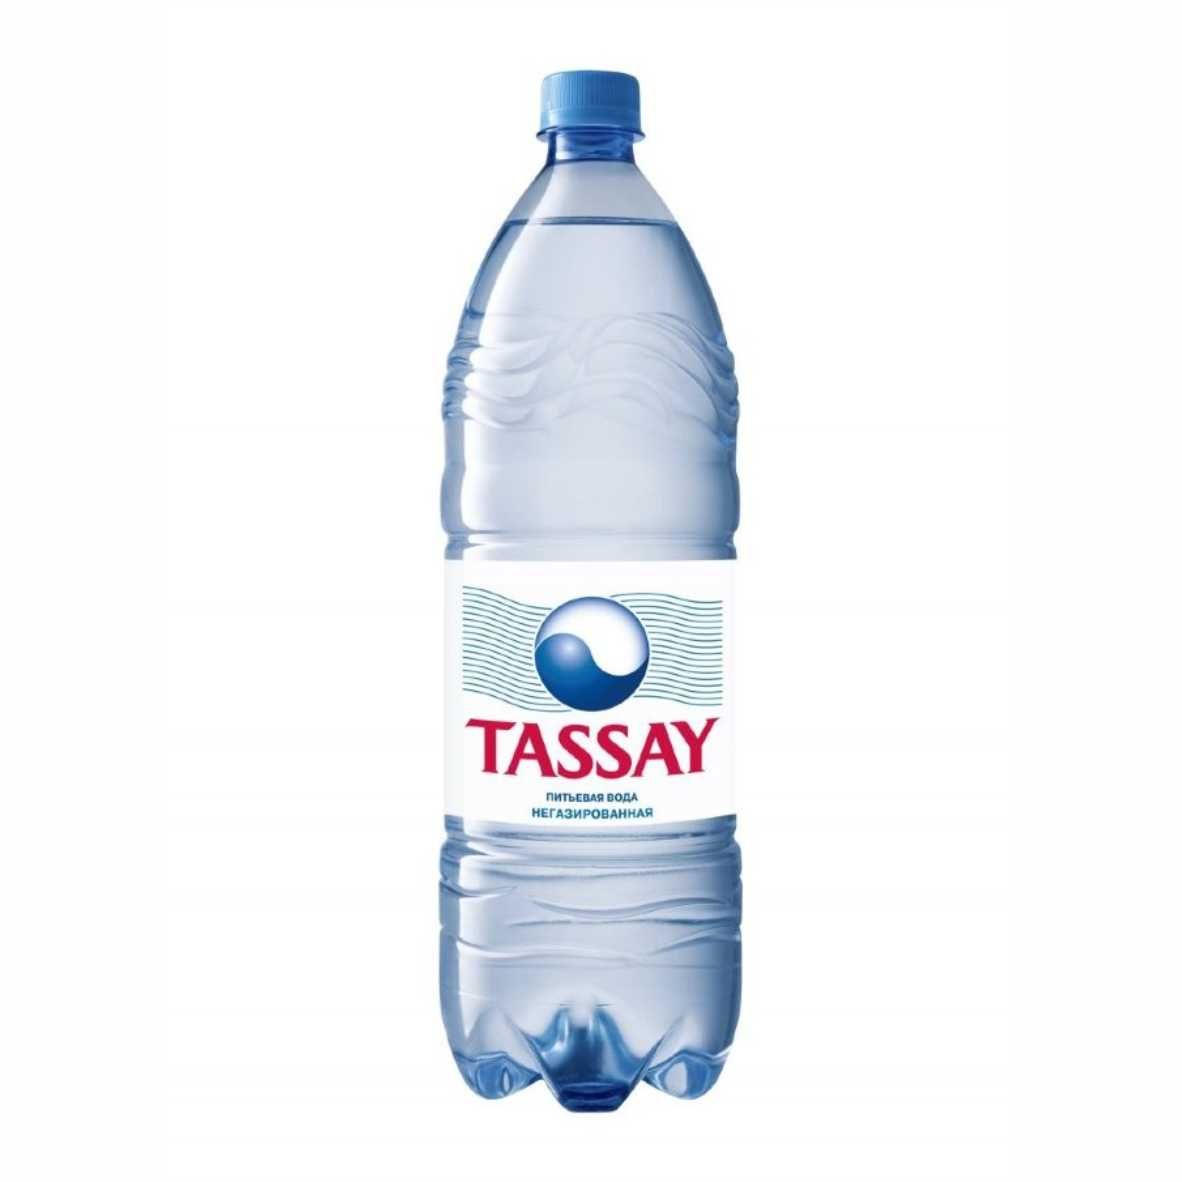 Вода 1.5 литра негазированная. Питьевая вода Tassay. Минеральная вода Тасай. Tassay вода Premium. Tassay вода 1,5.